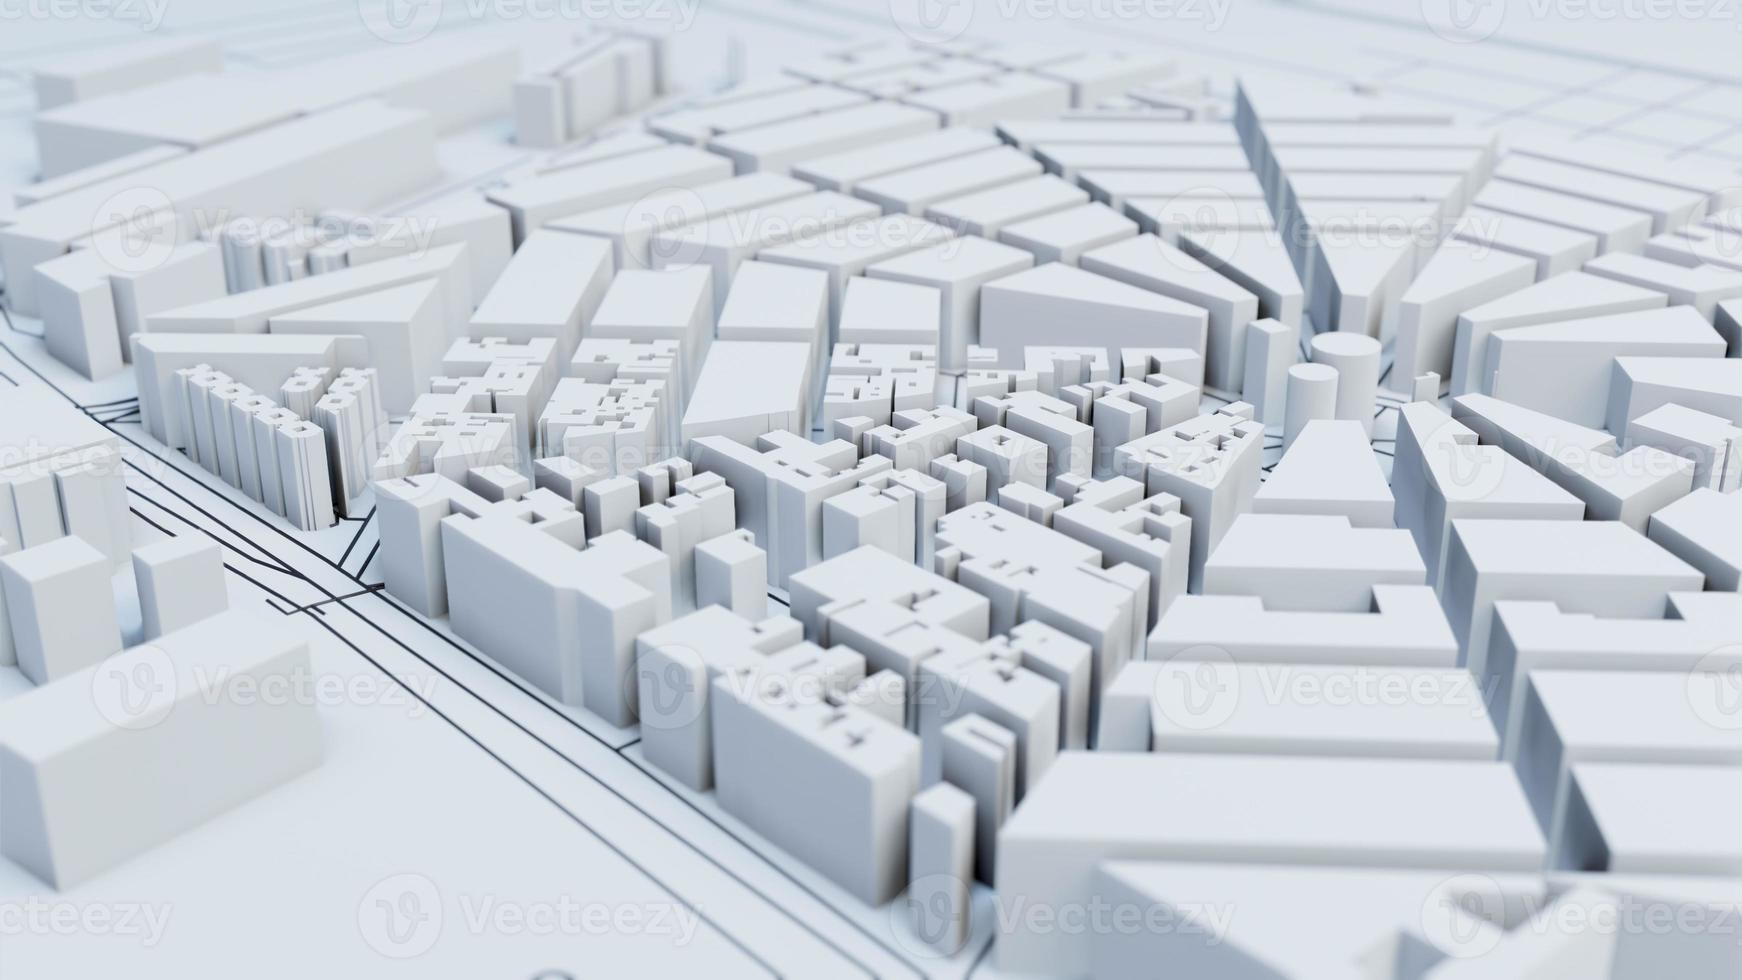 techno mega city urbane und futuristische technologiekonzepte, 3d-rendering foto